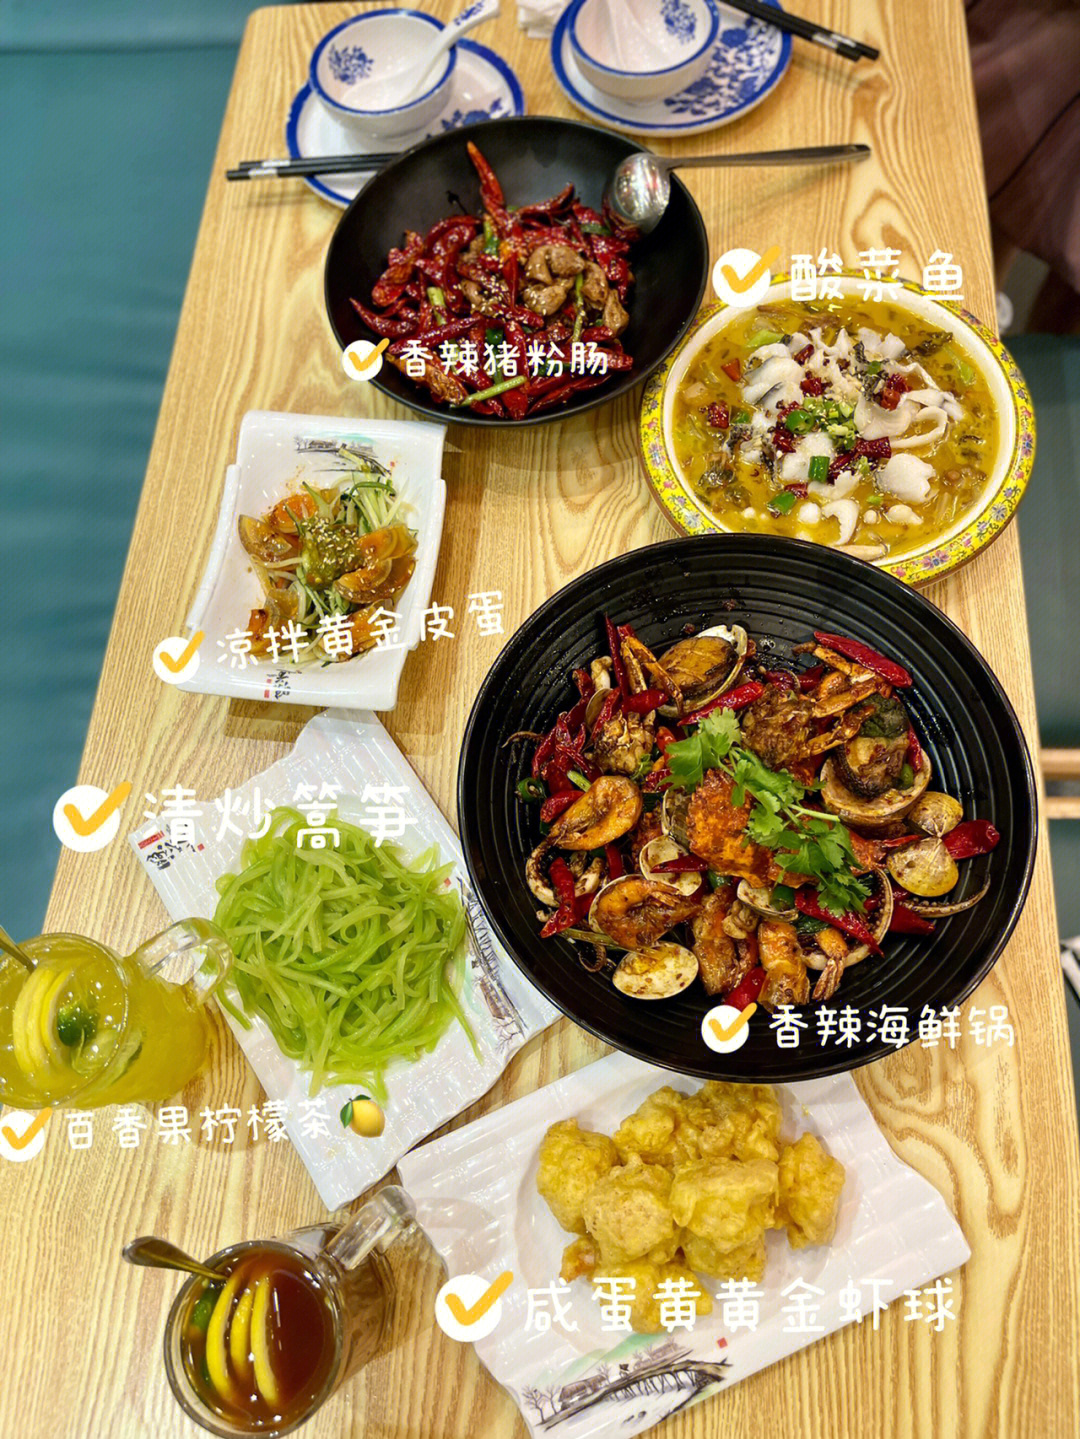 全香港最好吃的海鲜麻辣香锅60一定要来试试